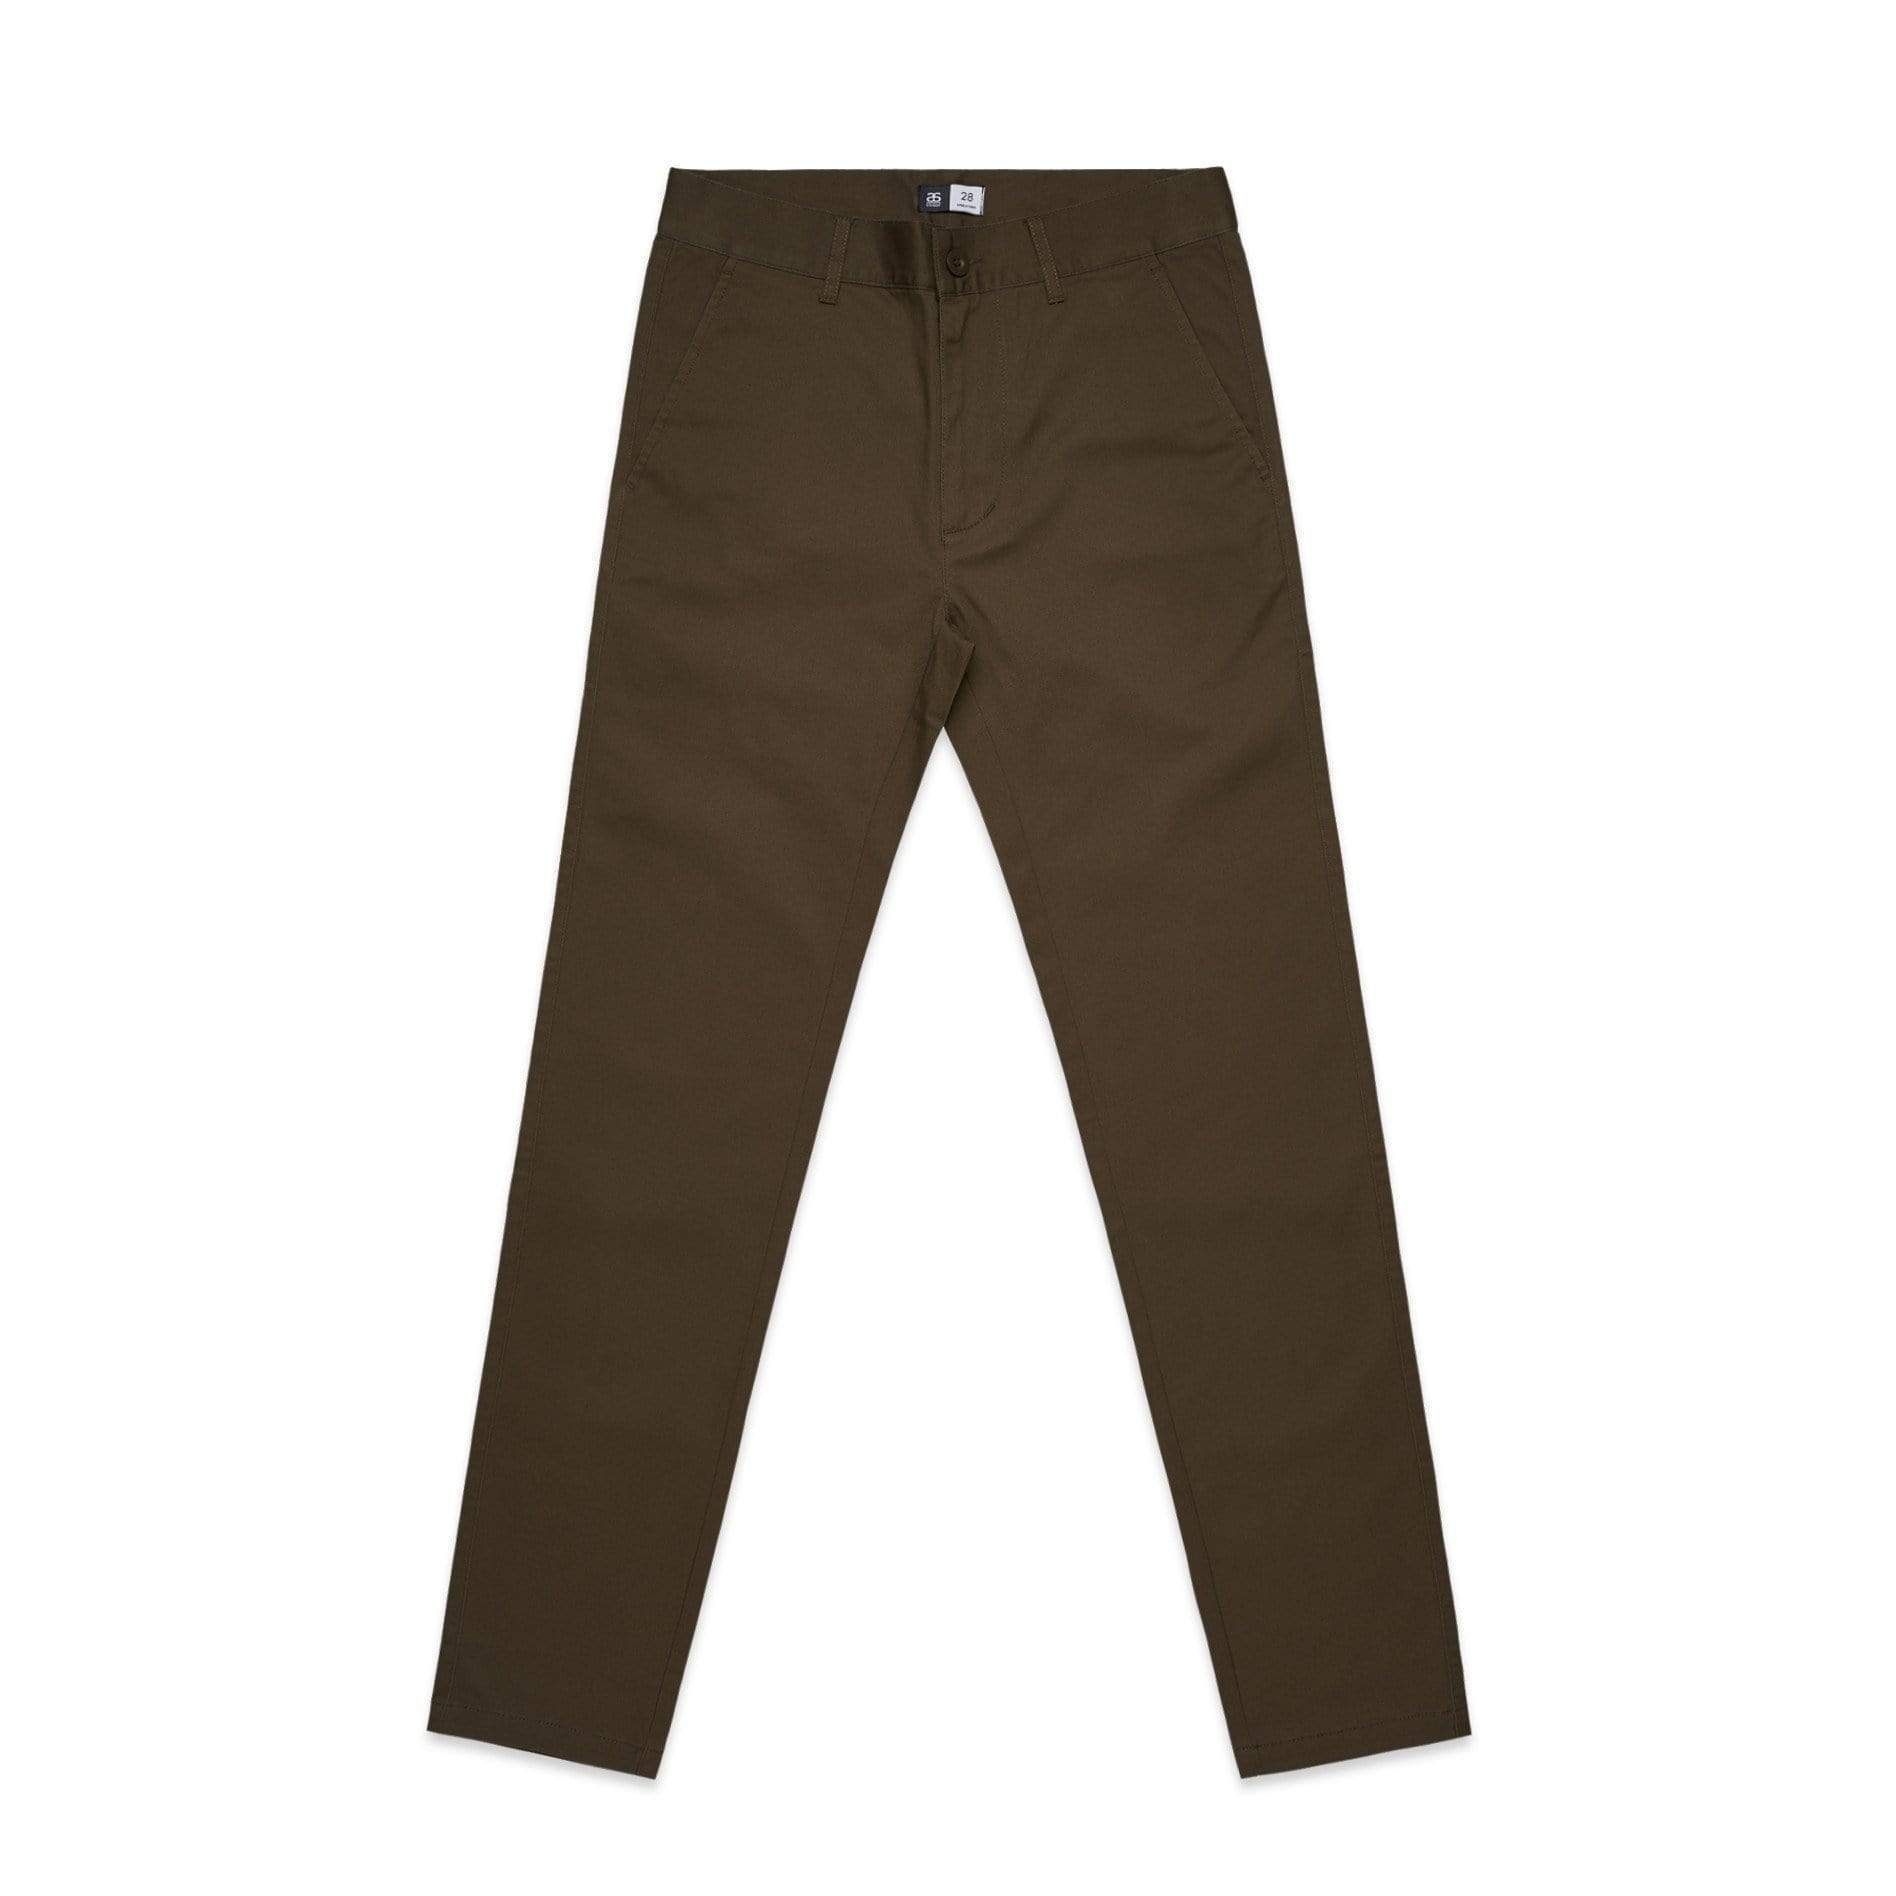 As Colour Active Wear OLIVE / 28 As Colour Men's standard pants 5901